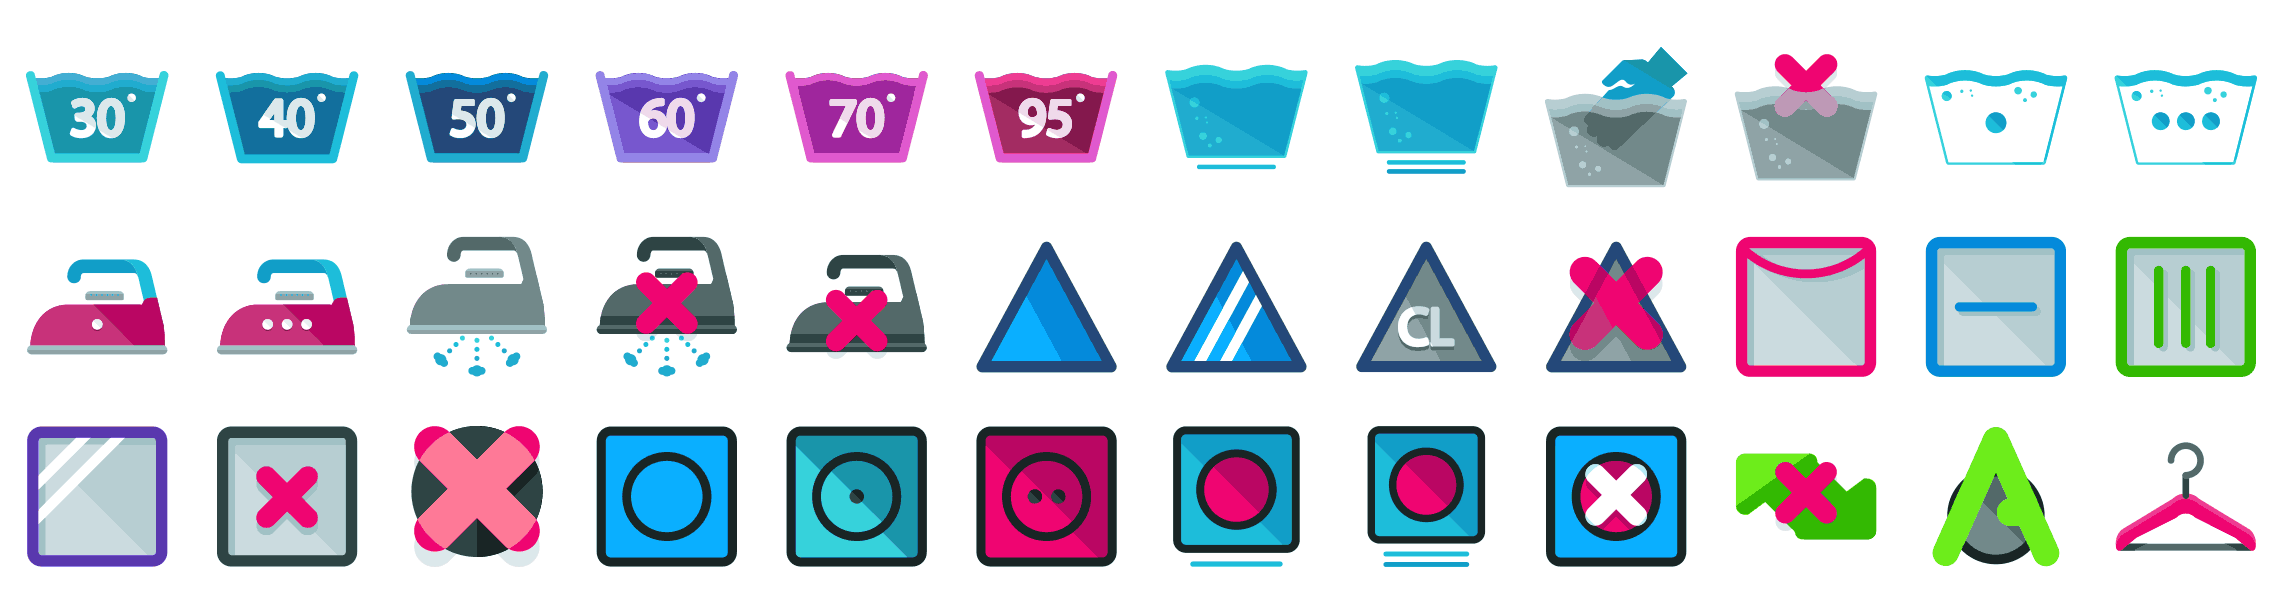 Washing-Instructions-flat-icons